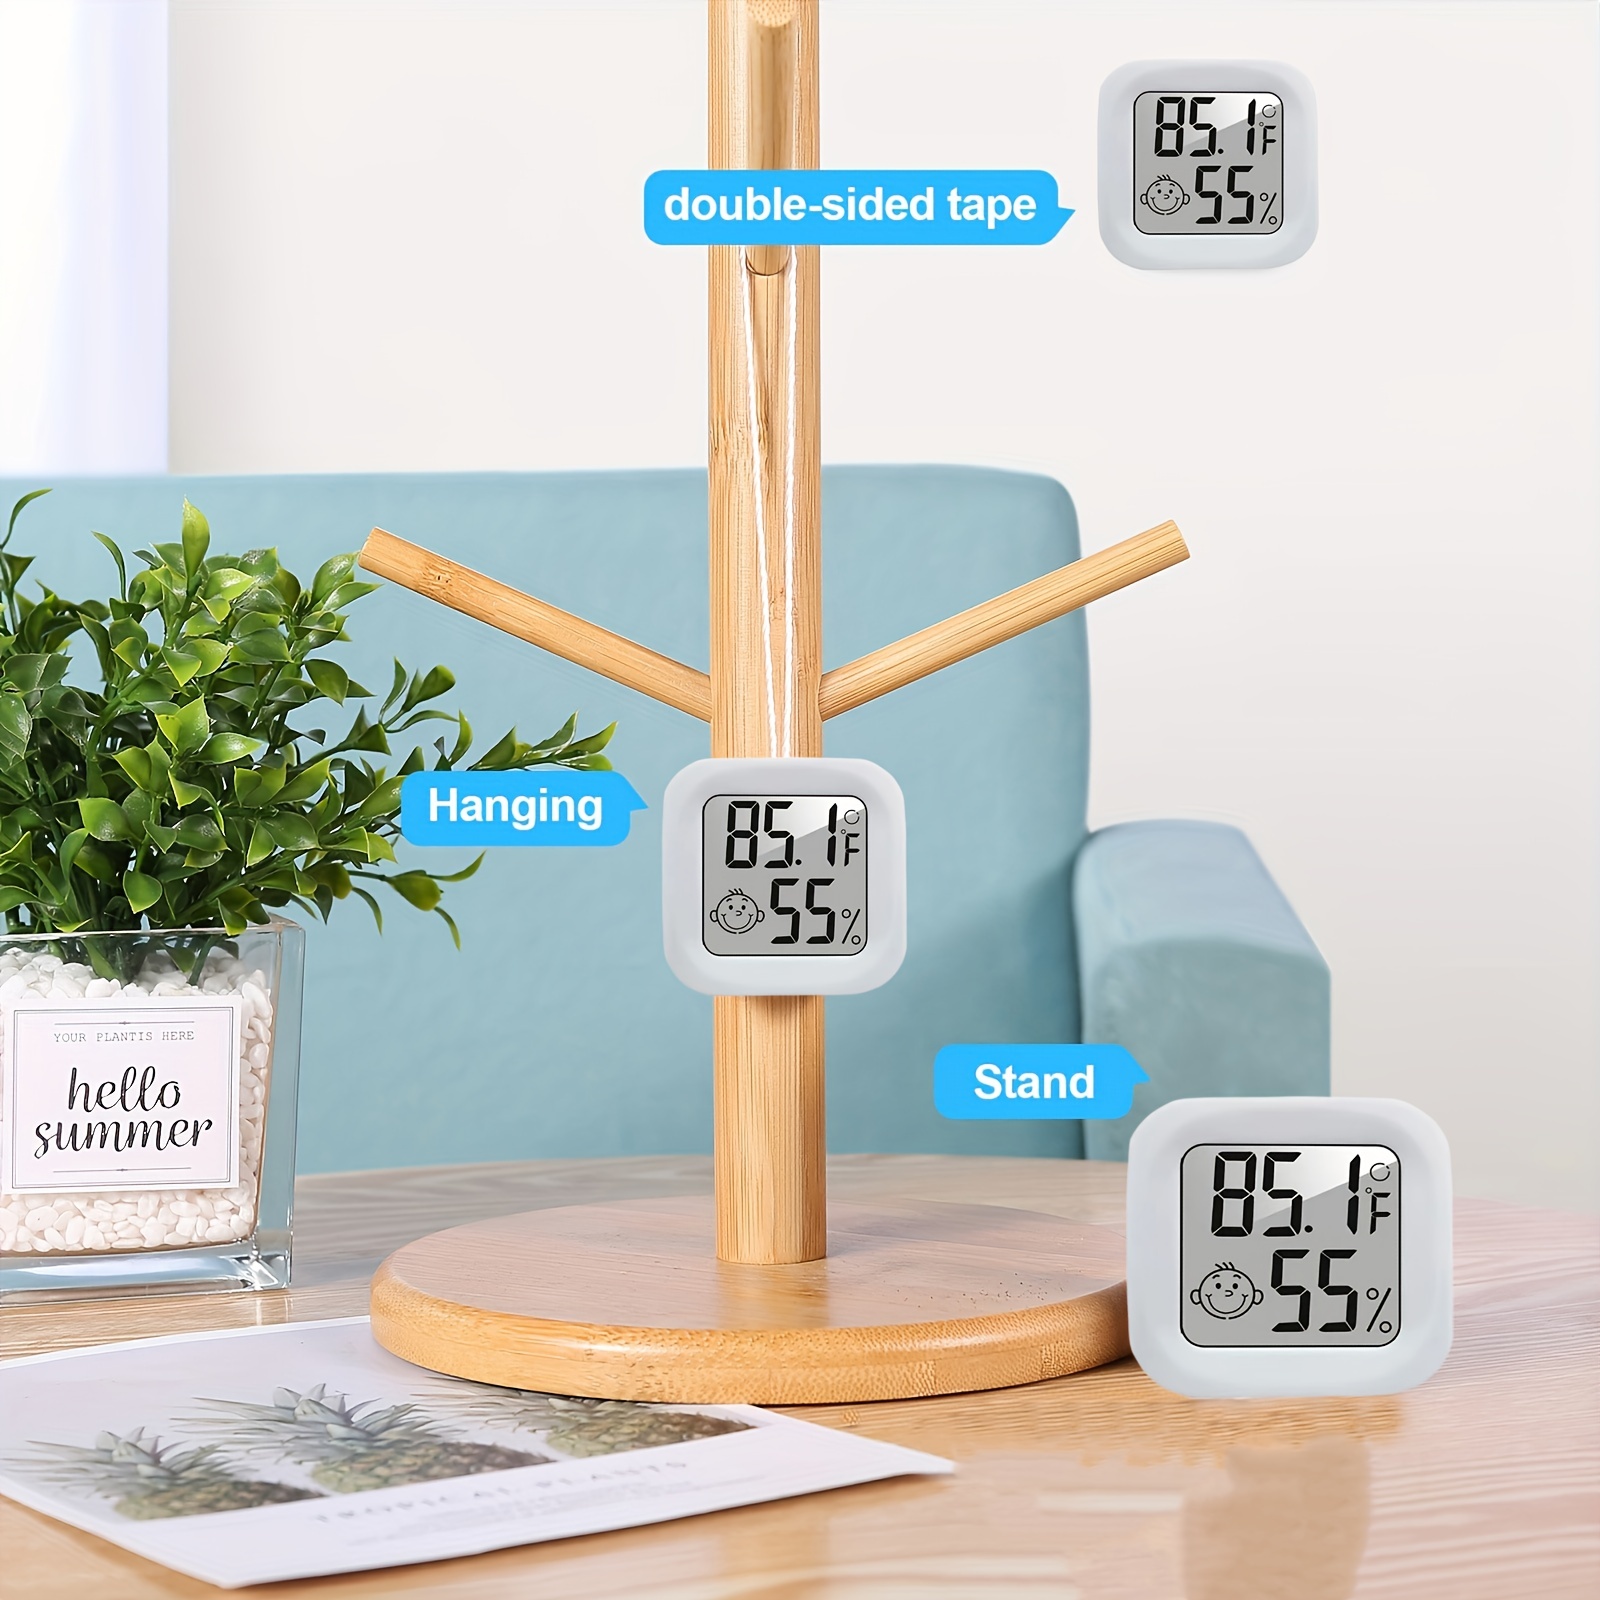 Vaikby Termometro Igrometro Digitale per Interni-Monitoraggio Accurato di  Temperatura e Umidità con Design Affidabile e Elegante-Ideale per Casa